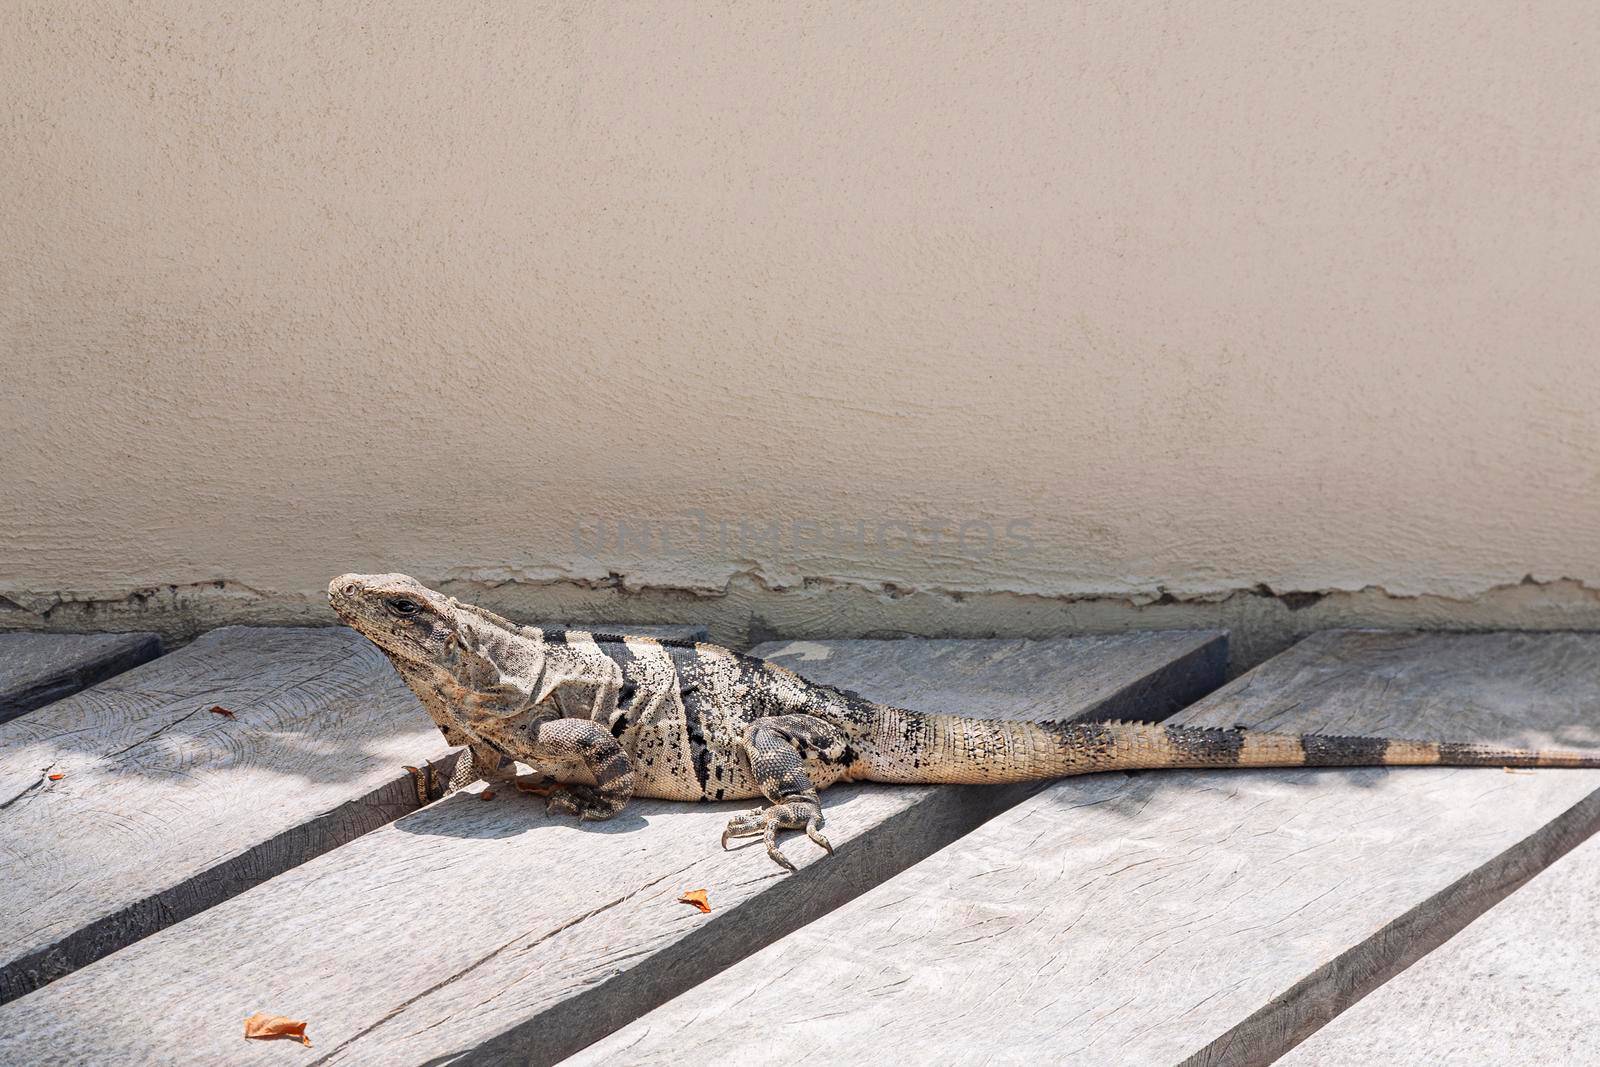 An iguana on a wooden floor in Mexico by zhu_zhu